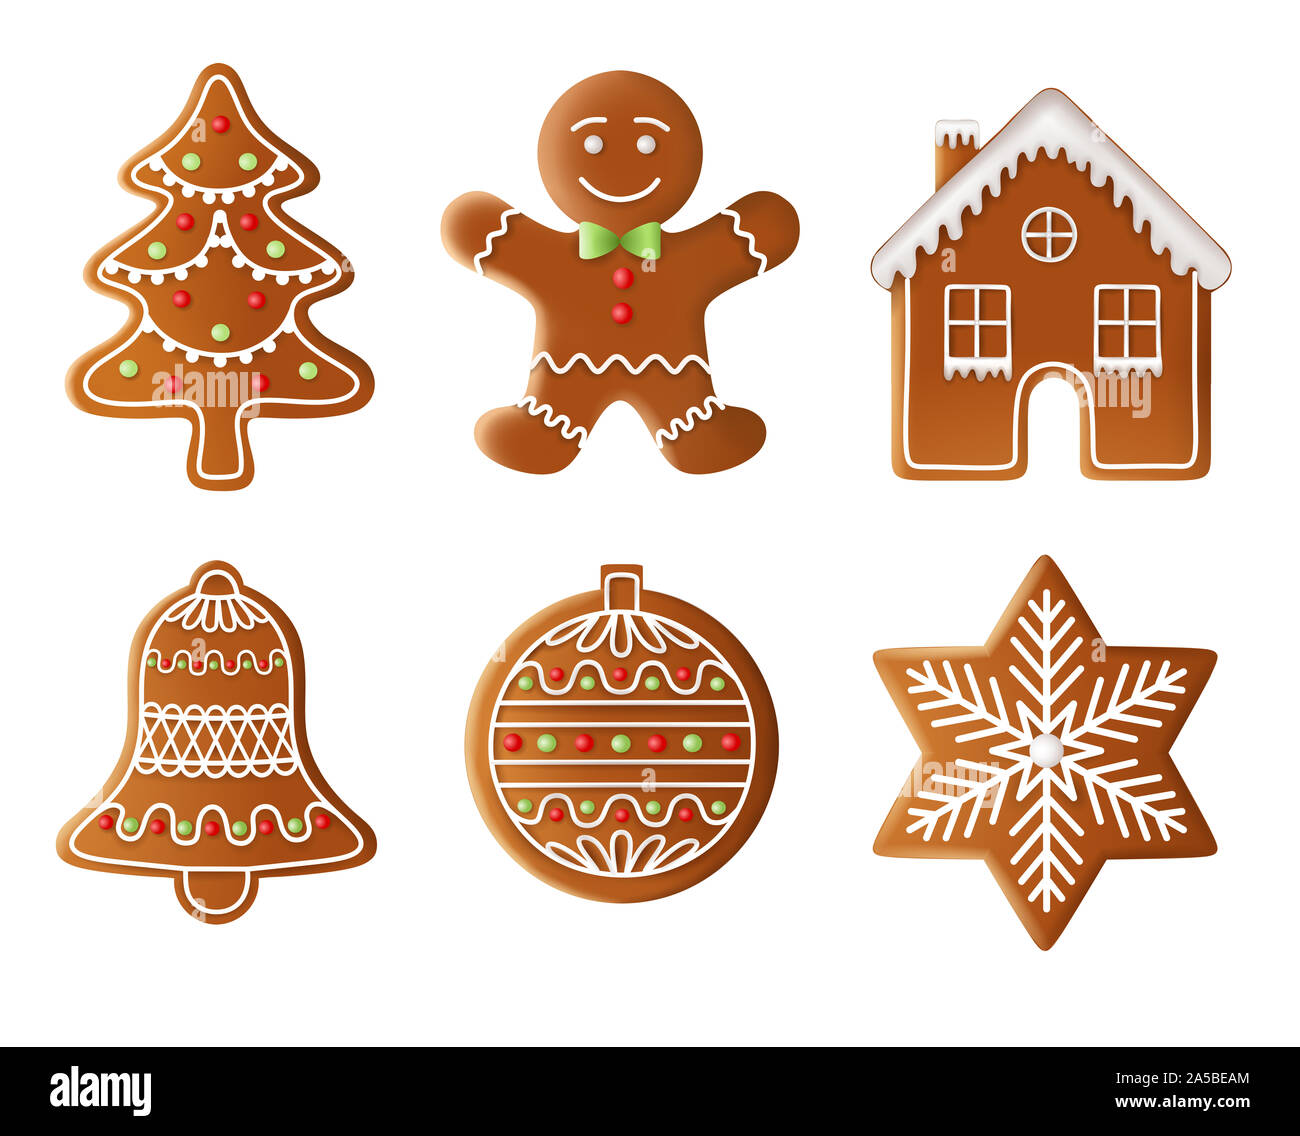 Albero di natale, uomo, house, bell, sfera e stella gingerbread illustrazione Foto Stock